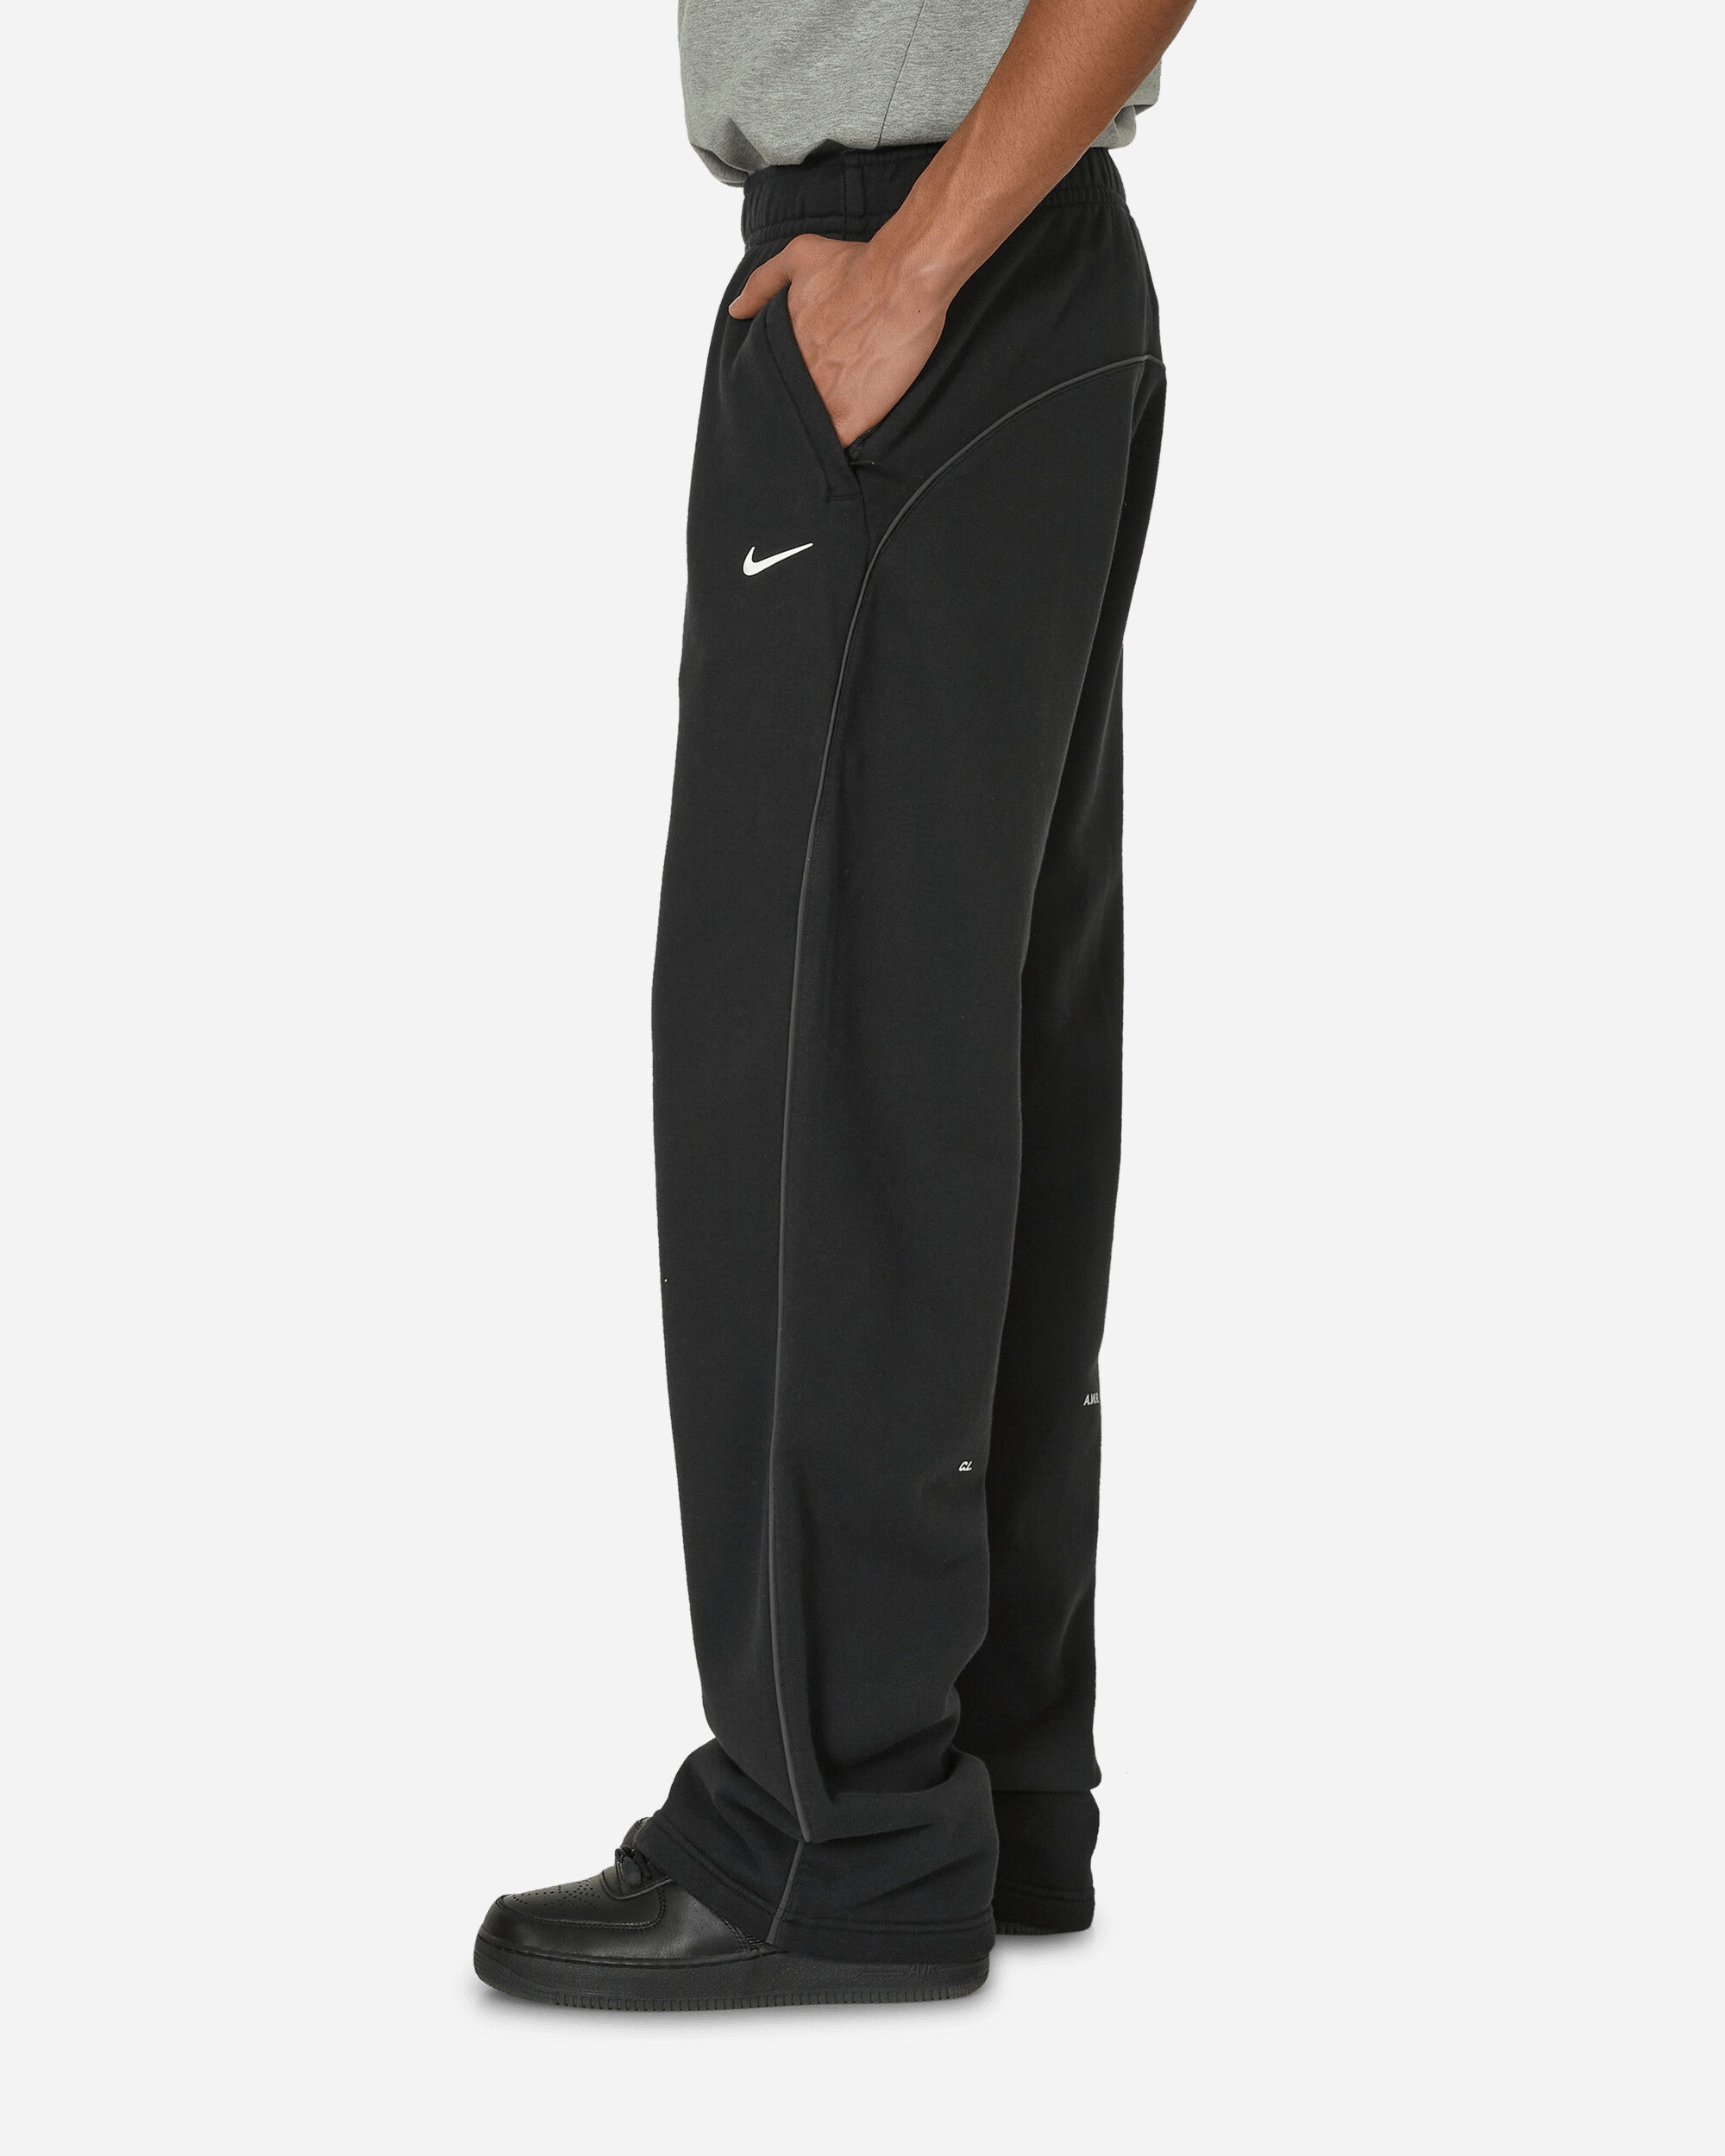 Nike M Nrg Nocta Cs Pant Flc Oh Black/Black/White Pants Sweatpants FZ4675-010